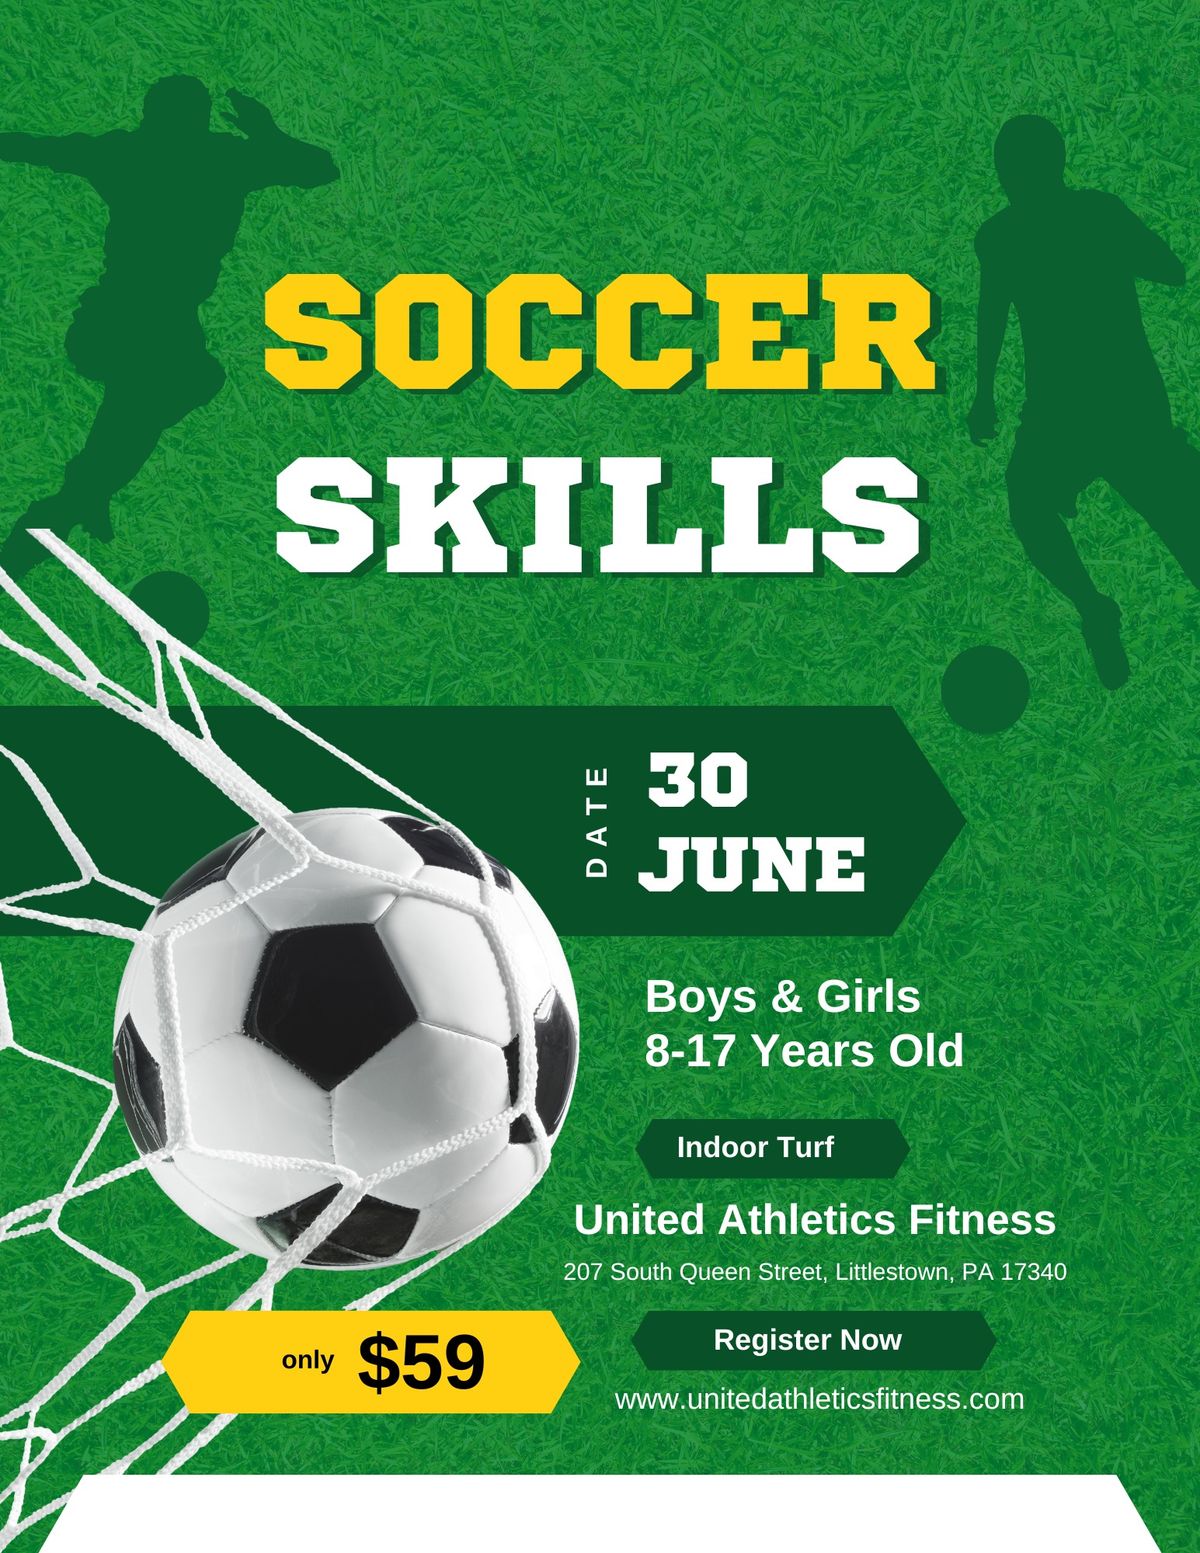 Soccer Skills Clinic